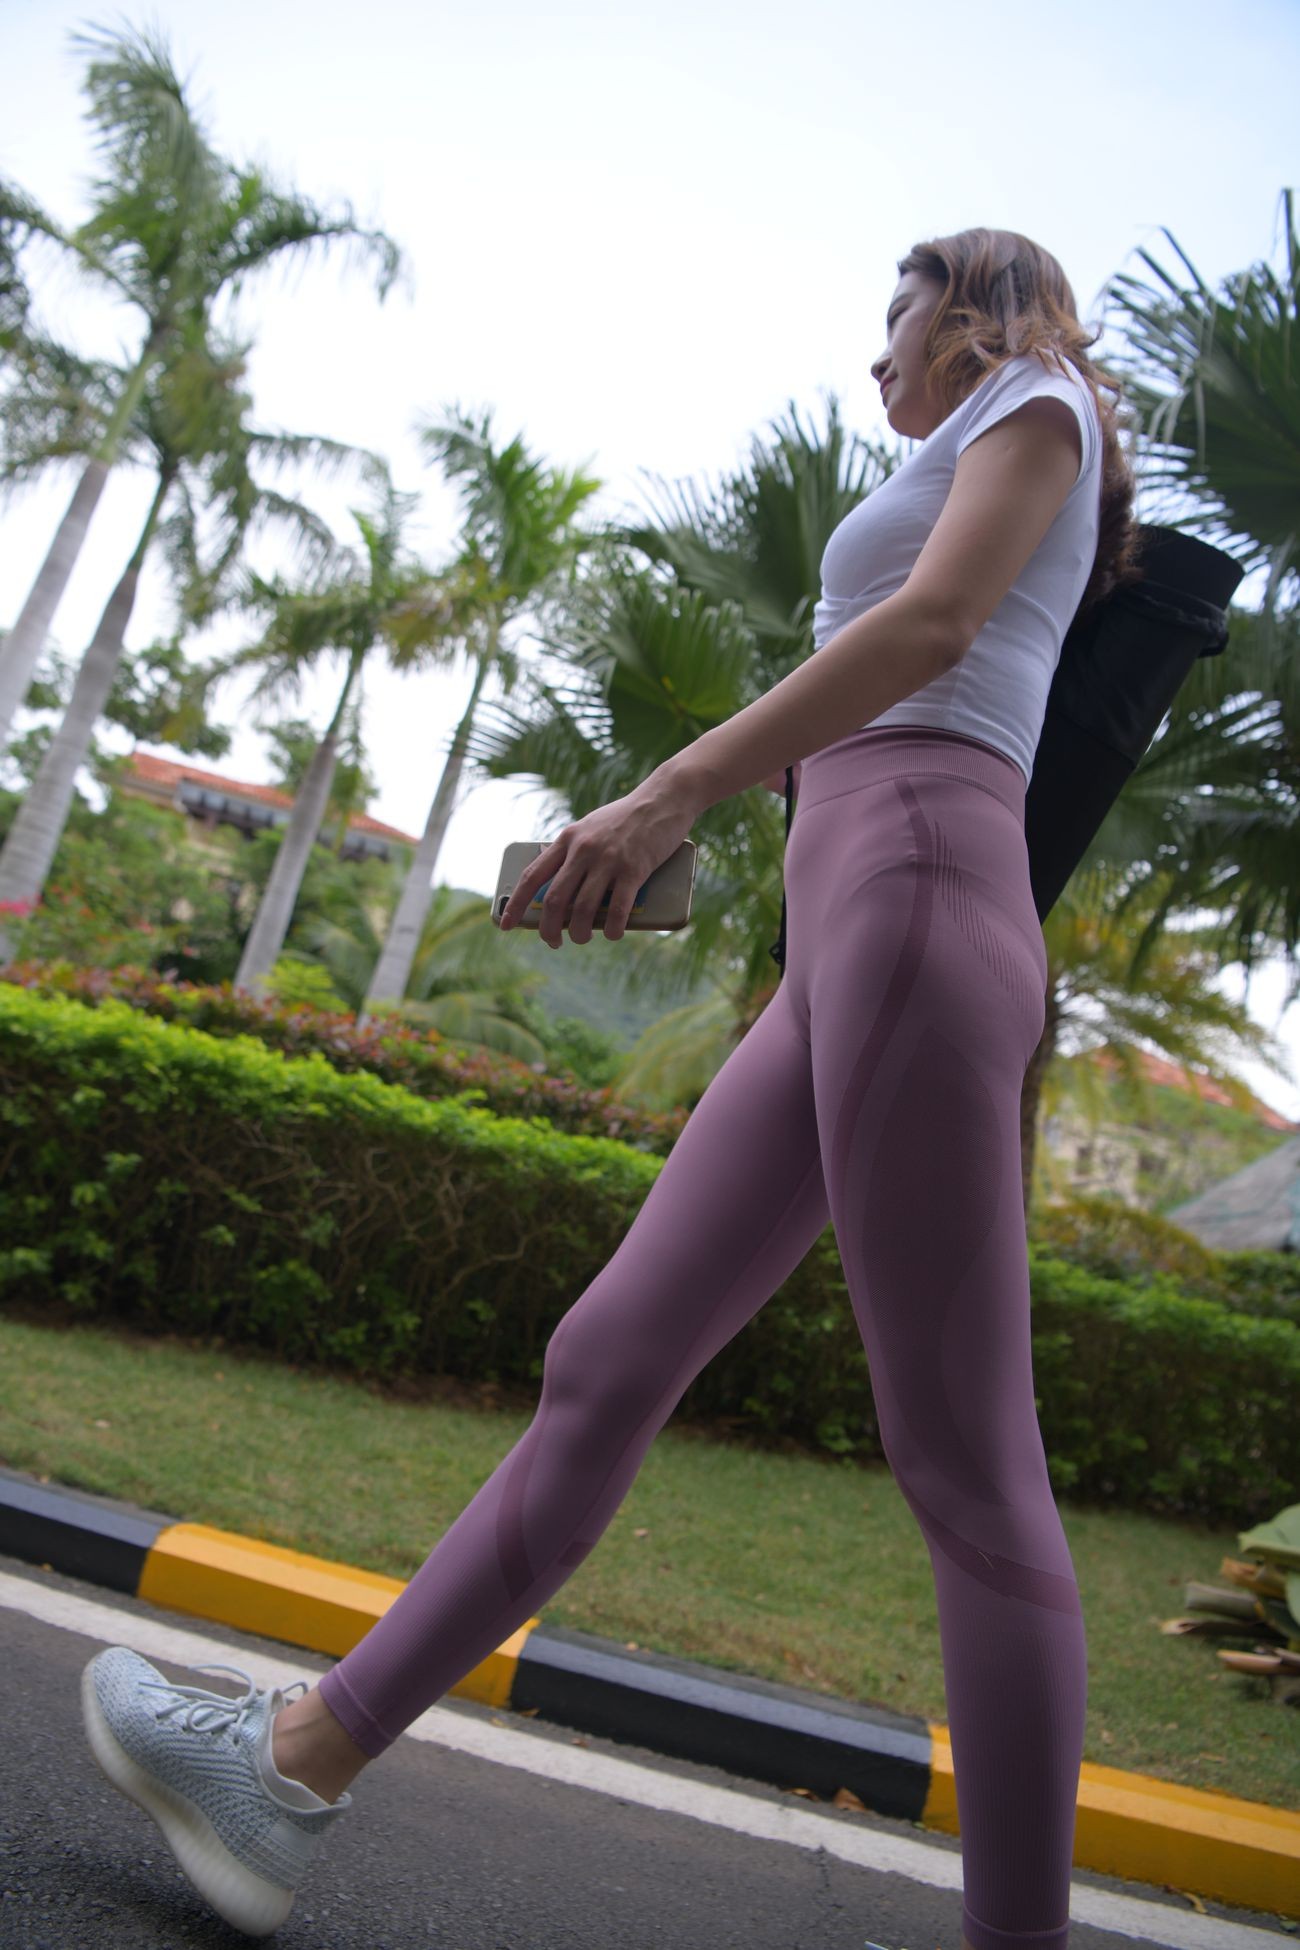 一只麋鹿旅拍摄影作品紫色瑜伽裤美女 (49)